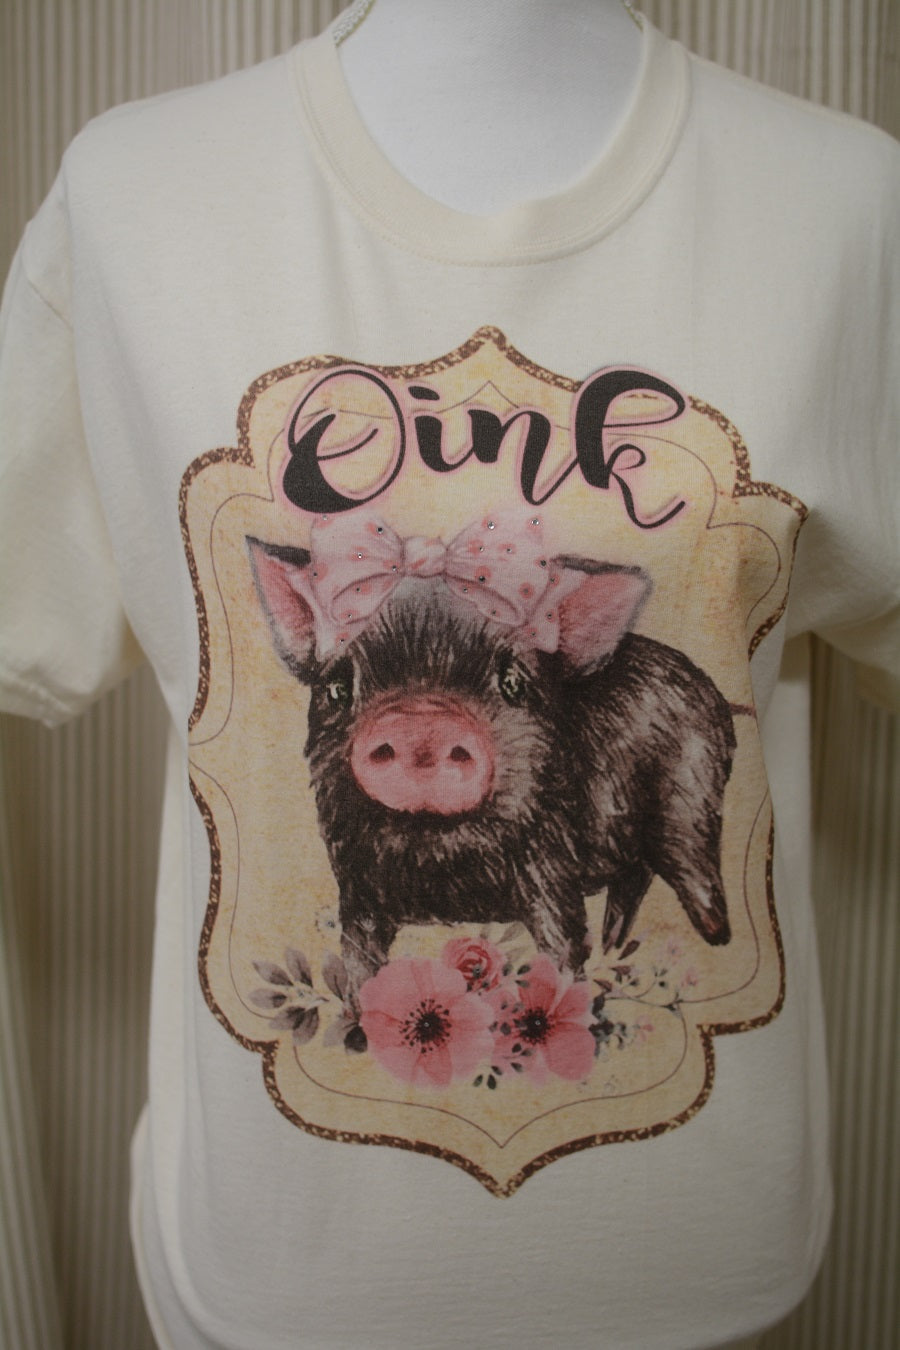 FARM HOUSE Oink! Pig Farm Shirt